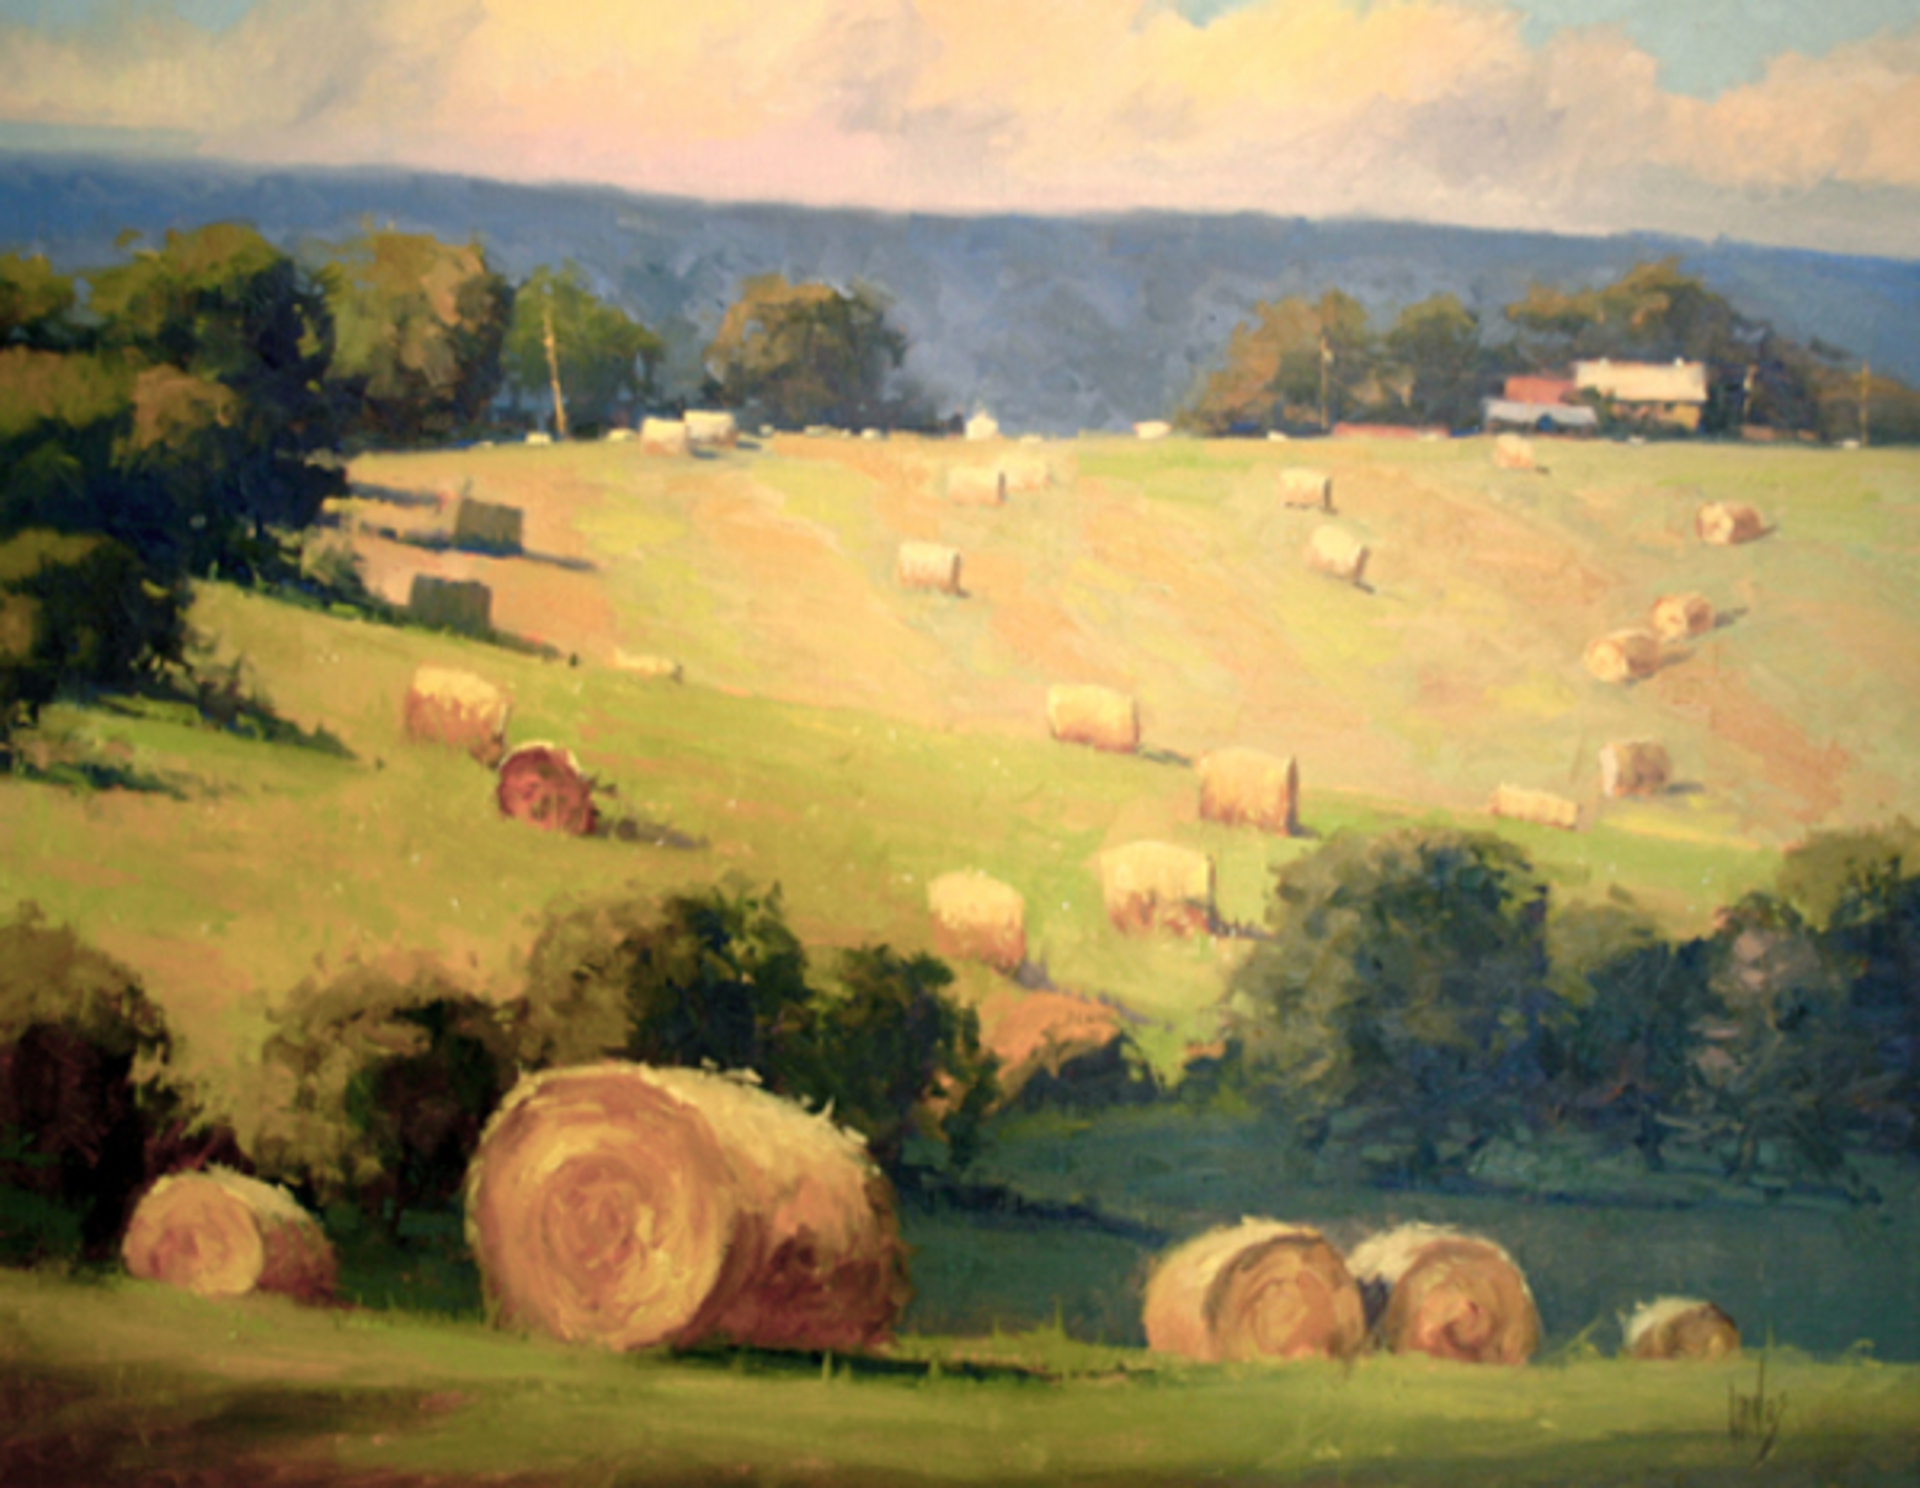 Hills Of Hay by Rusty Jones